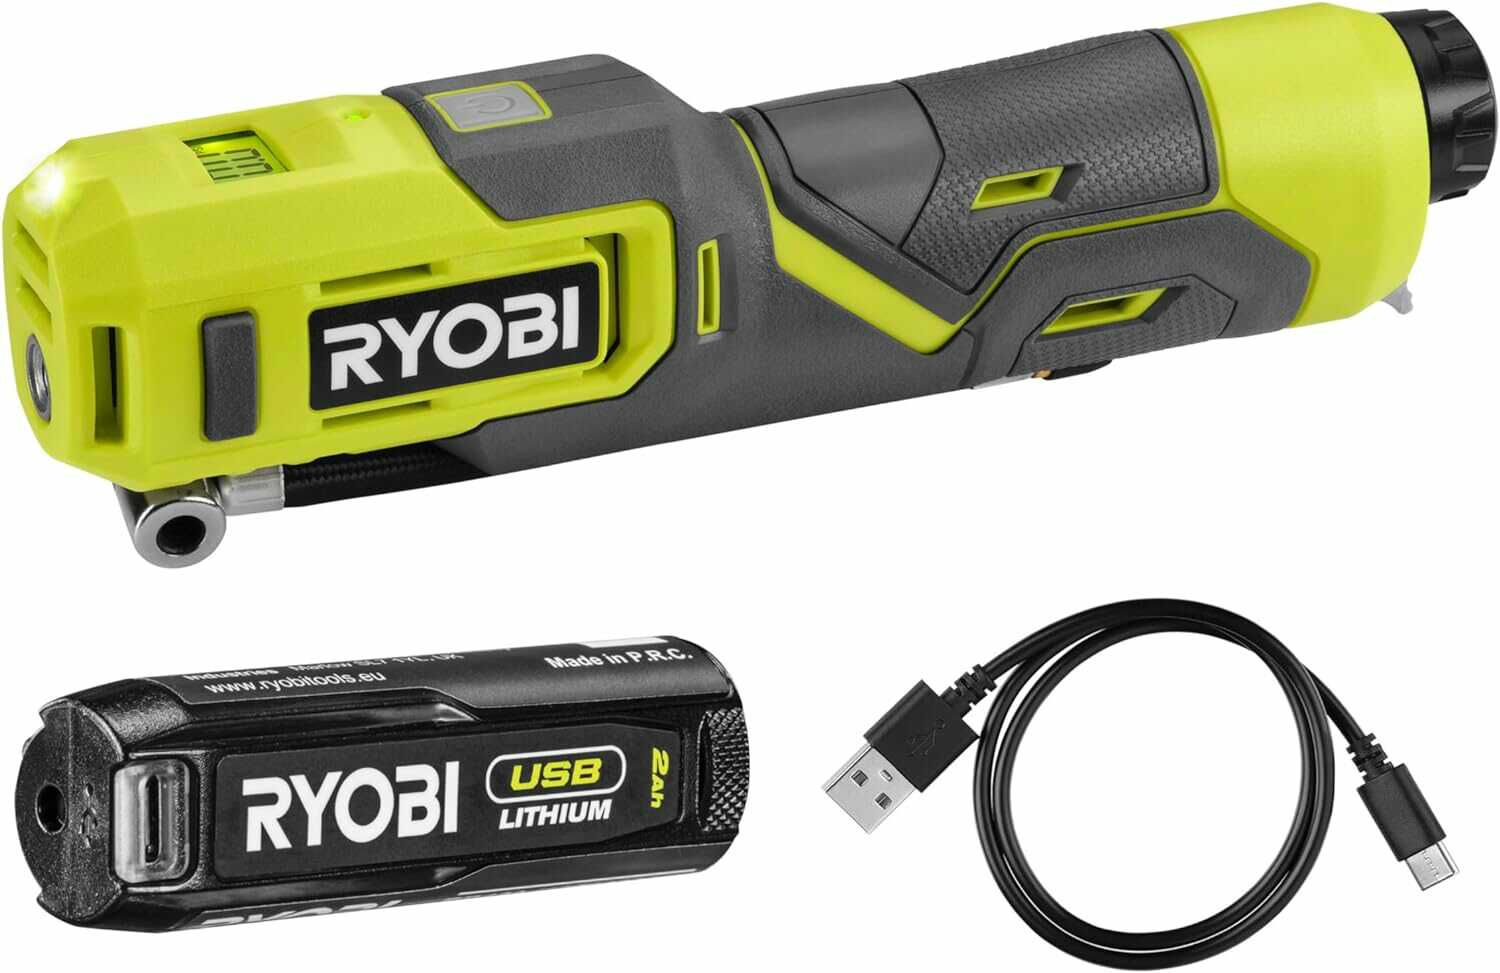 RYOBI RI4 120G 4V Kompressor für 59€ statt 77,64€